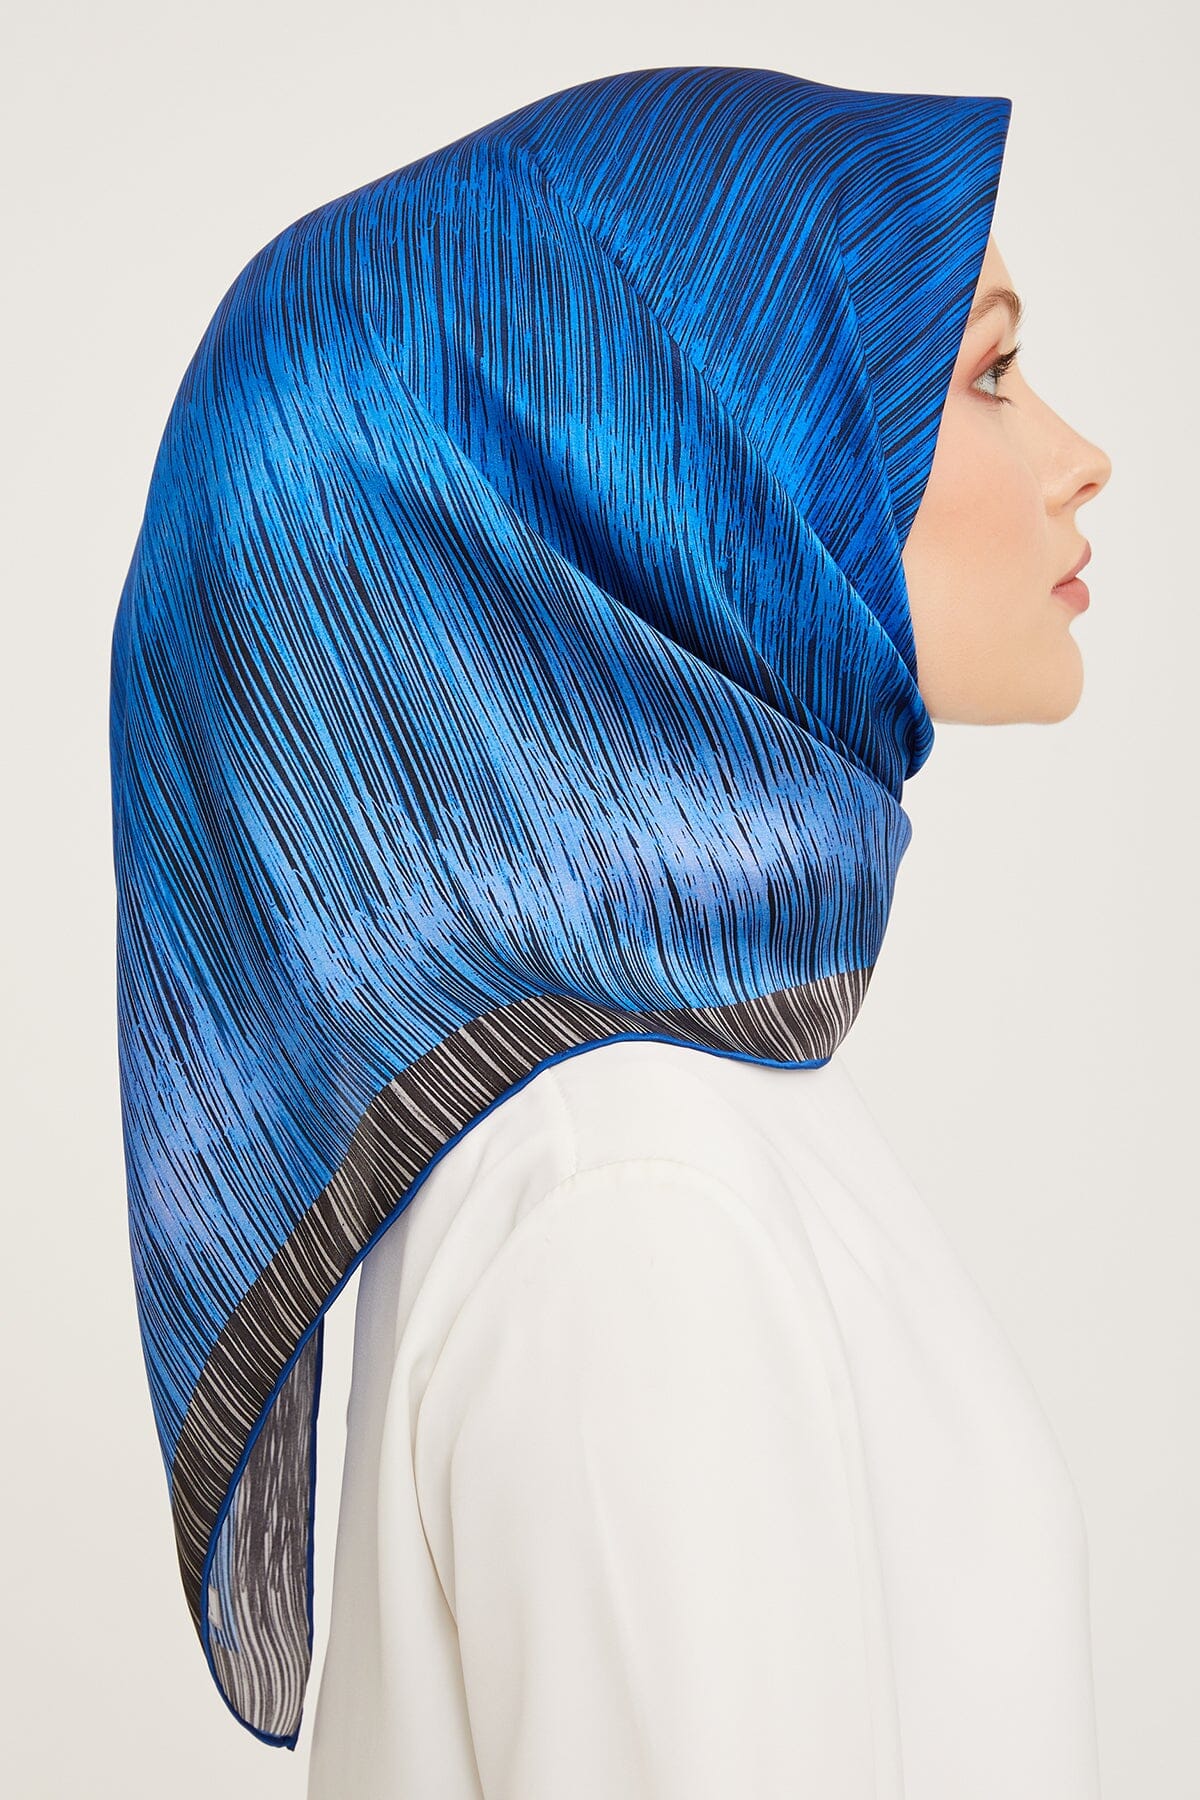 Armine Myers Silk Hair Wrap #2 Silk Hijabs,Armine Armine 